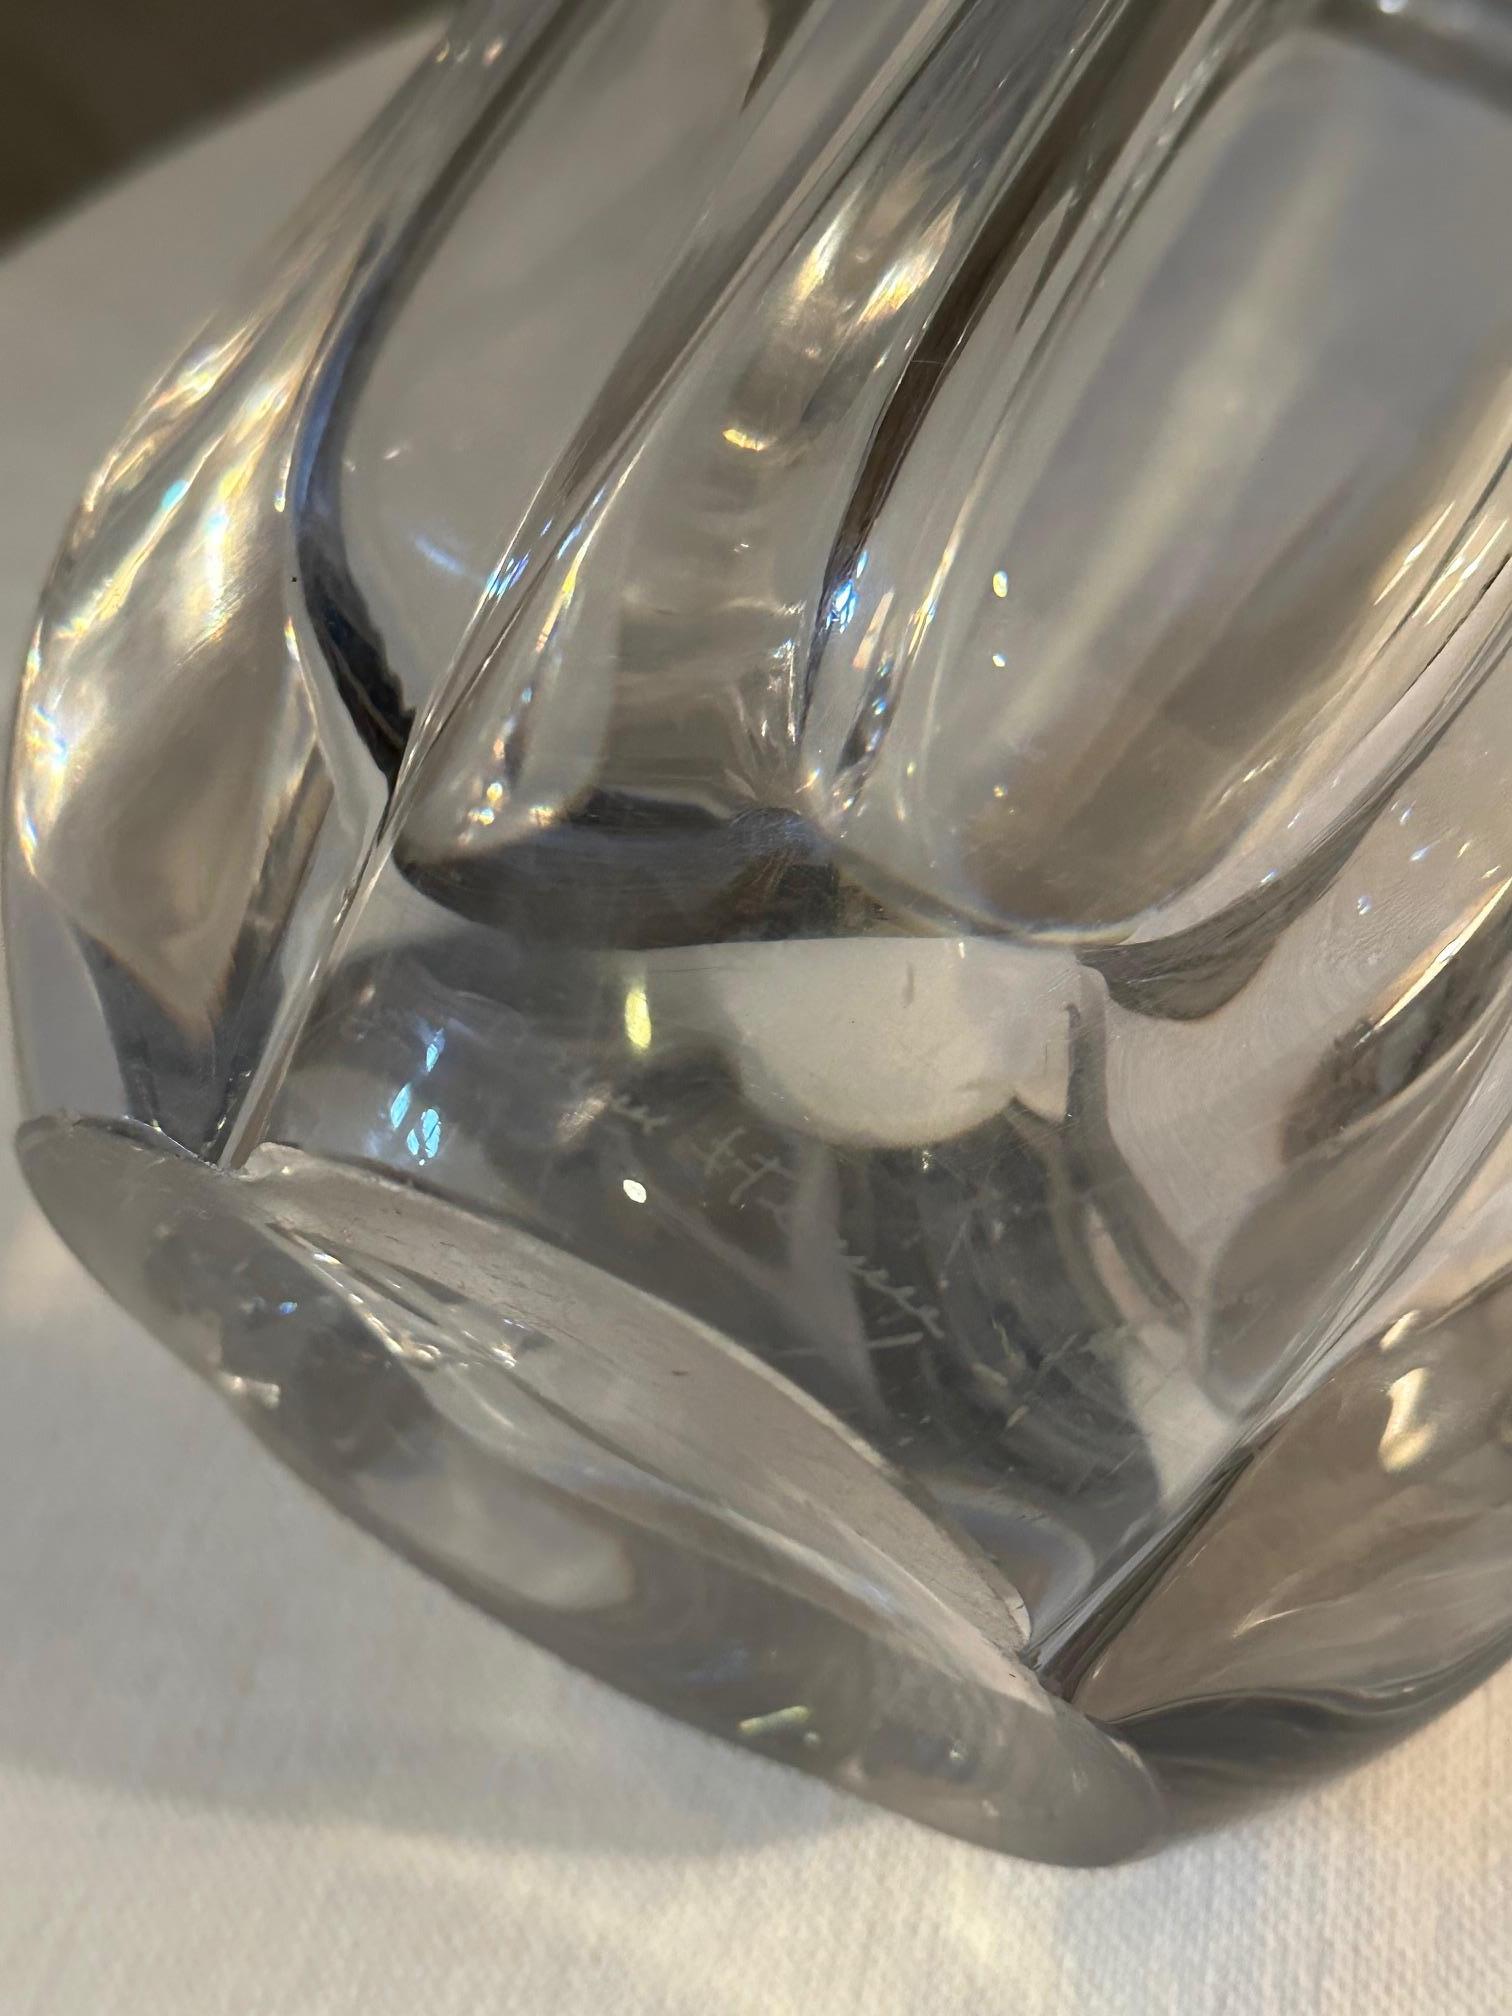 Grand vase en cristal de Daum des années 60 en bon état, on peut juste voir quelques rayures. Belle forme et taille impressionnante. 
Idéal pour réaliser de grands et beaux bouquets.